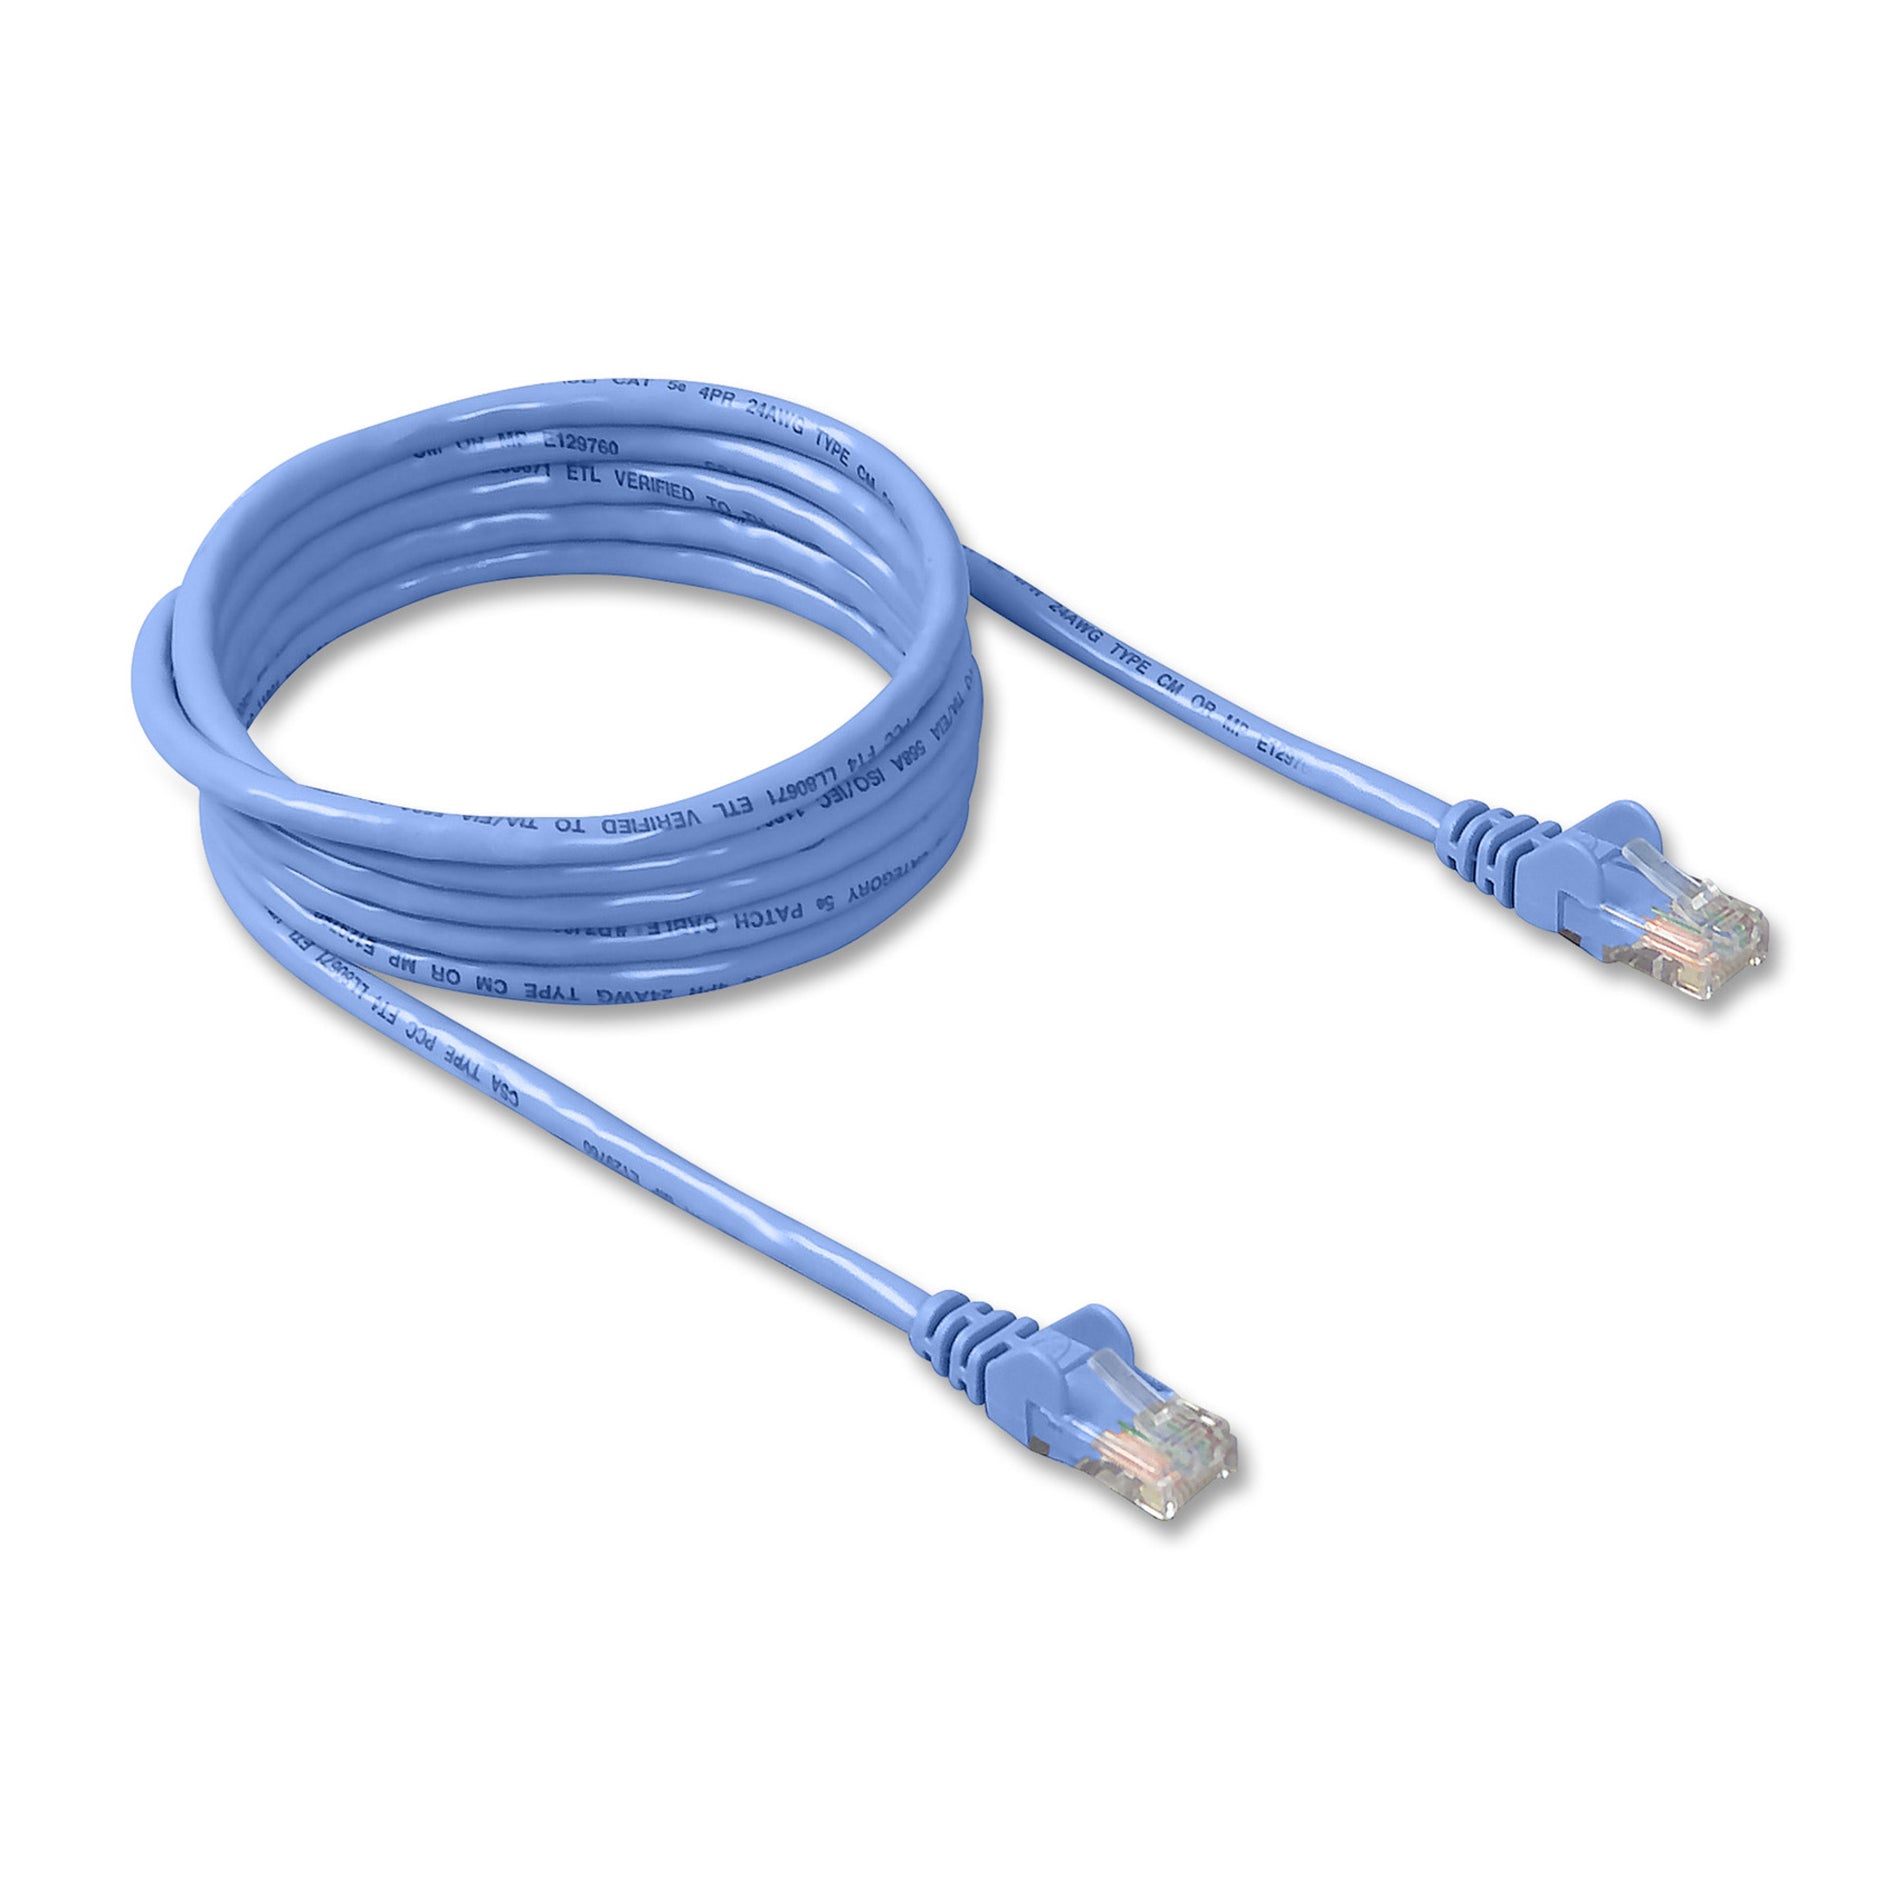 Cable de conexión sin enganches Belkin A3L791-03-BLU-S RJ45 CAT5e 3 pies Azul Excede el rendimiento de Categoría 5e. Marca - Belkin